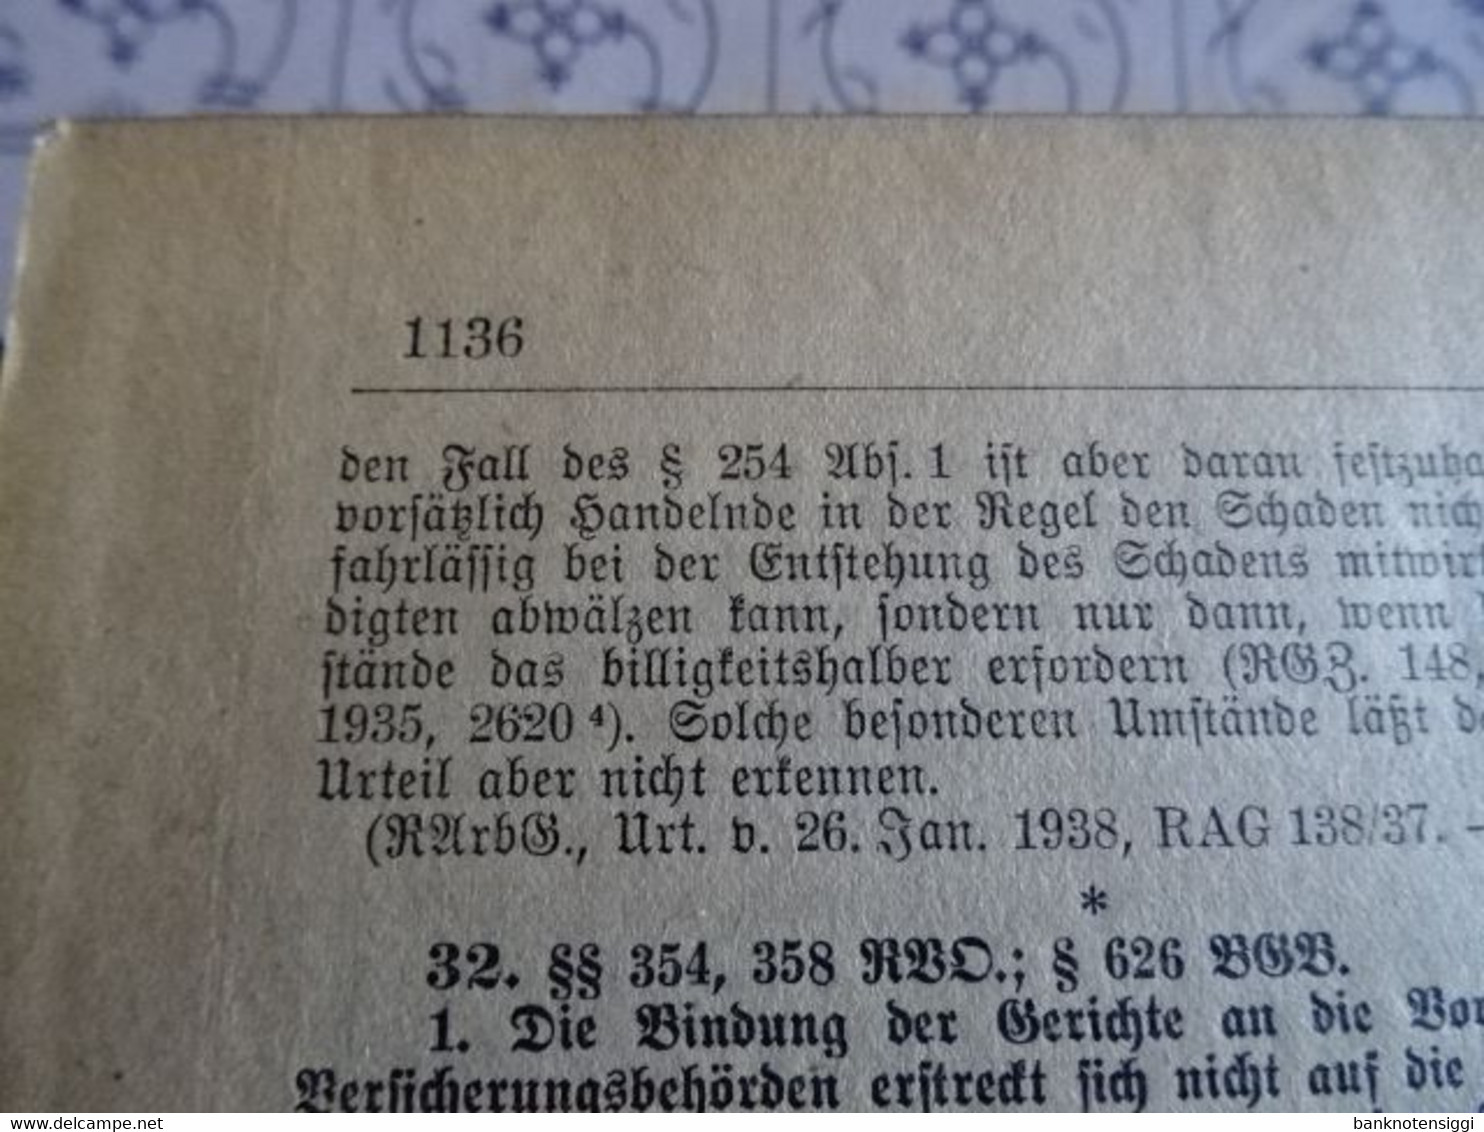 Buch "Juristische Wochenzeitschrift 67 Jahrgang 1938 Band 1 Seite 1-1136